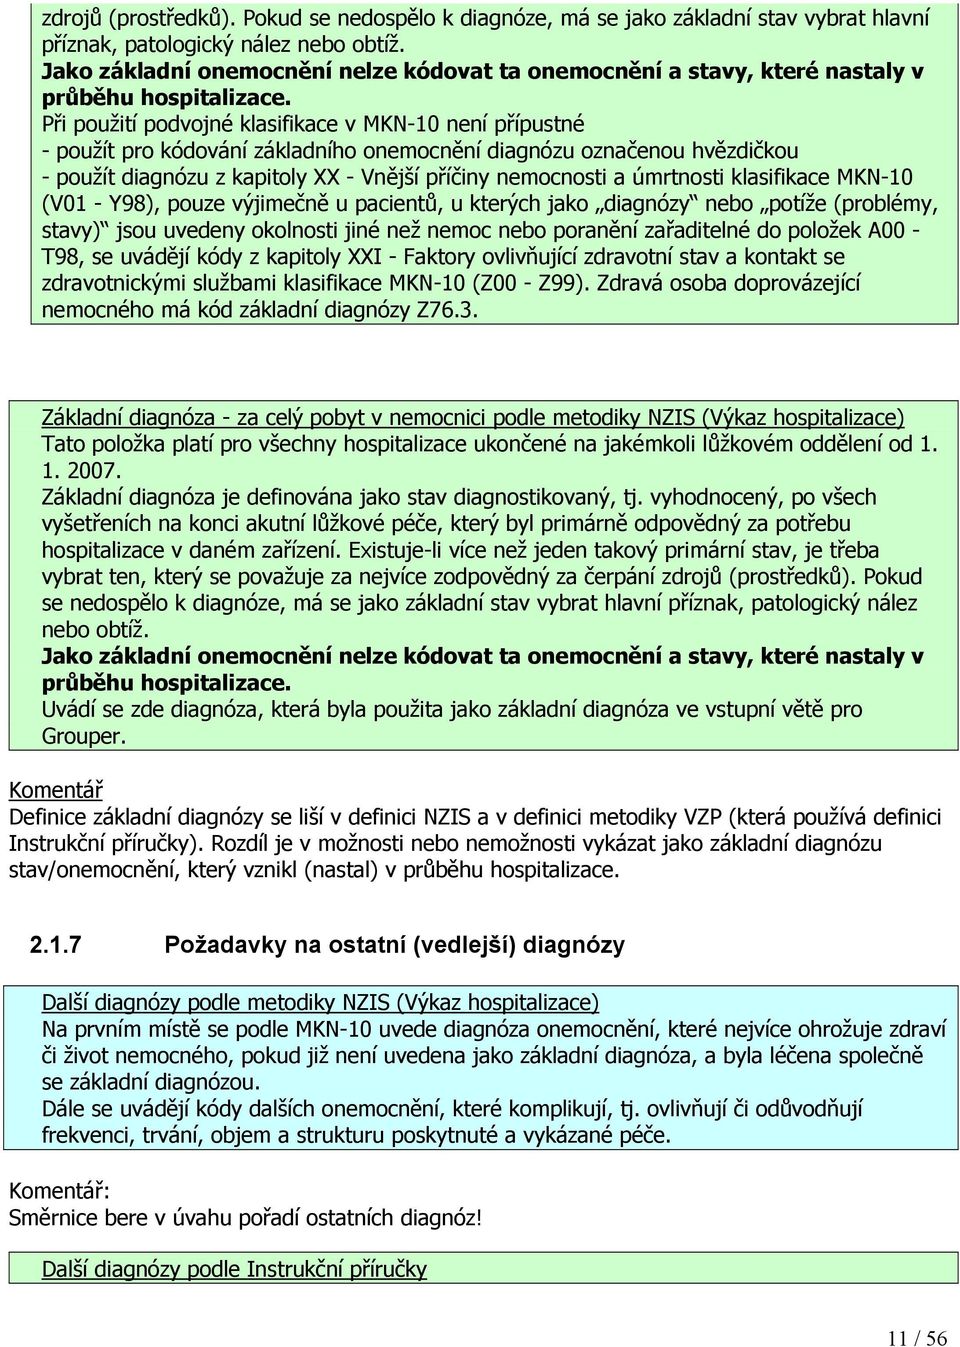 Při použití podvojné klasifikace v MKN-10 není přípustné - použít pro kódování základního onemocnění diagnózu označenou hvězdičkou - použít diagnózu z kapitoly XX - Vnější příčiny nemocnosti a